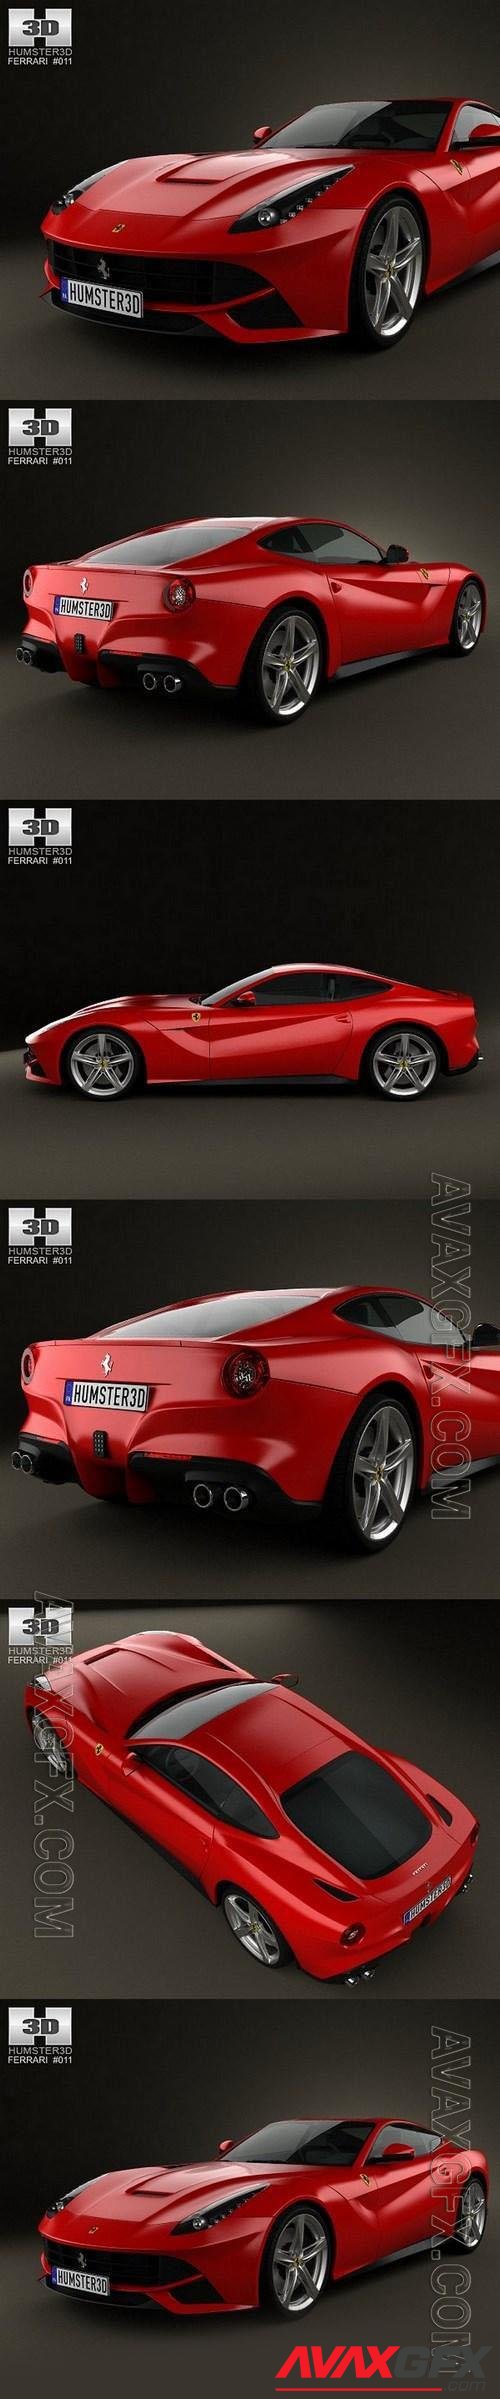 Ferrari F12 Berlinetta 2012 - 3d model